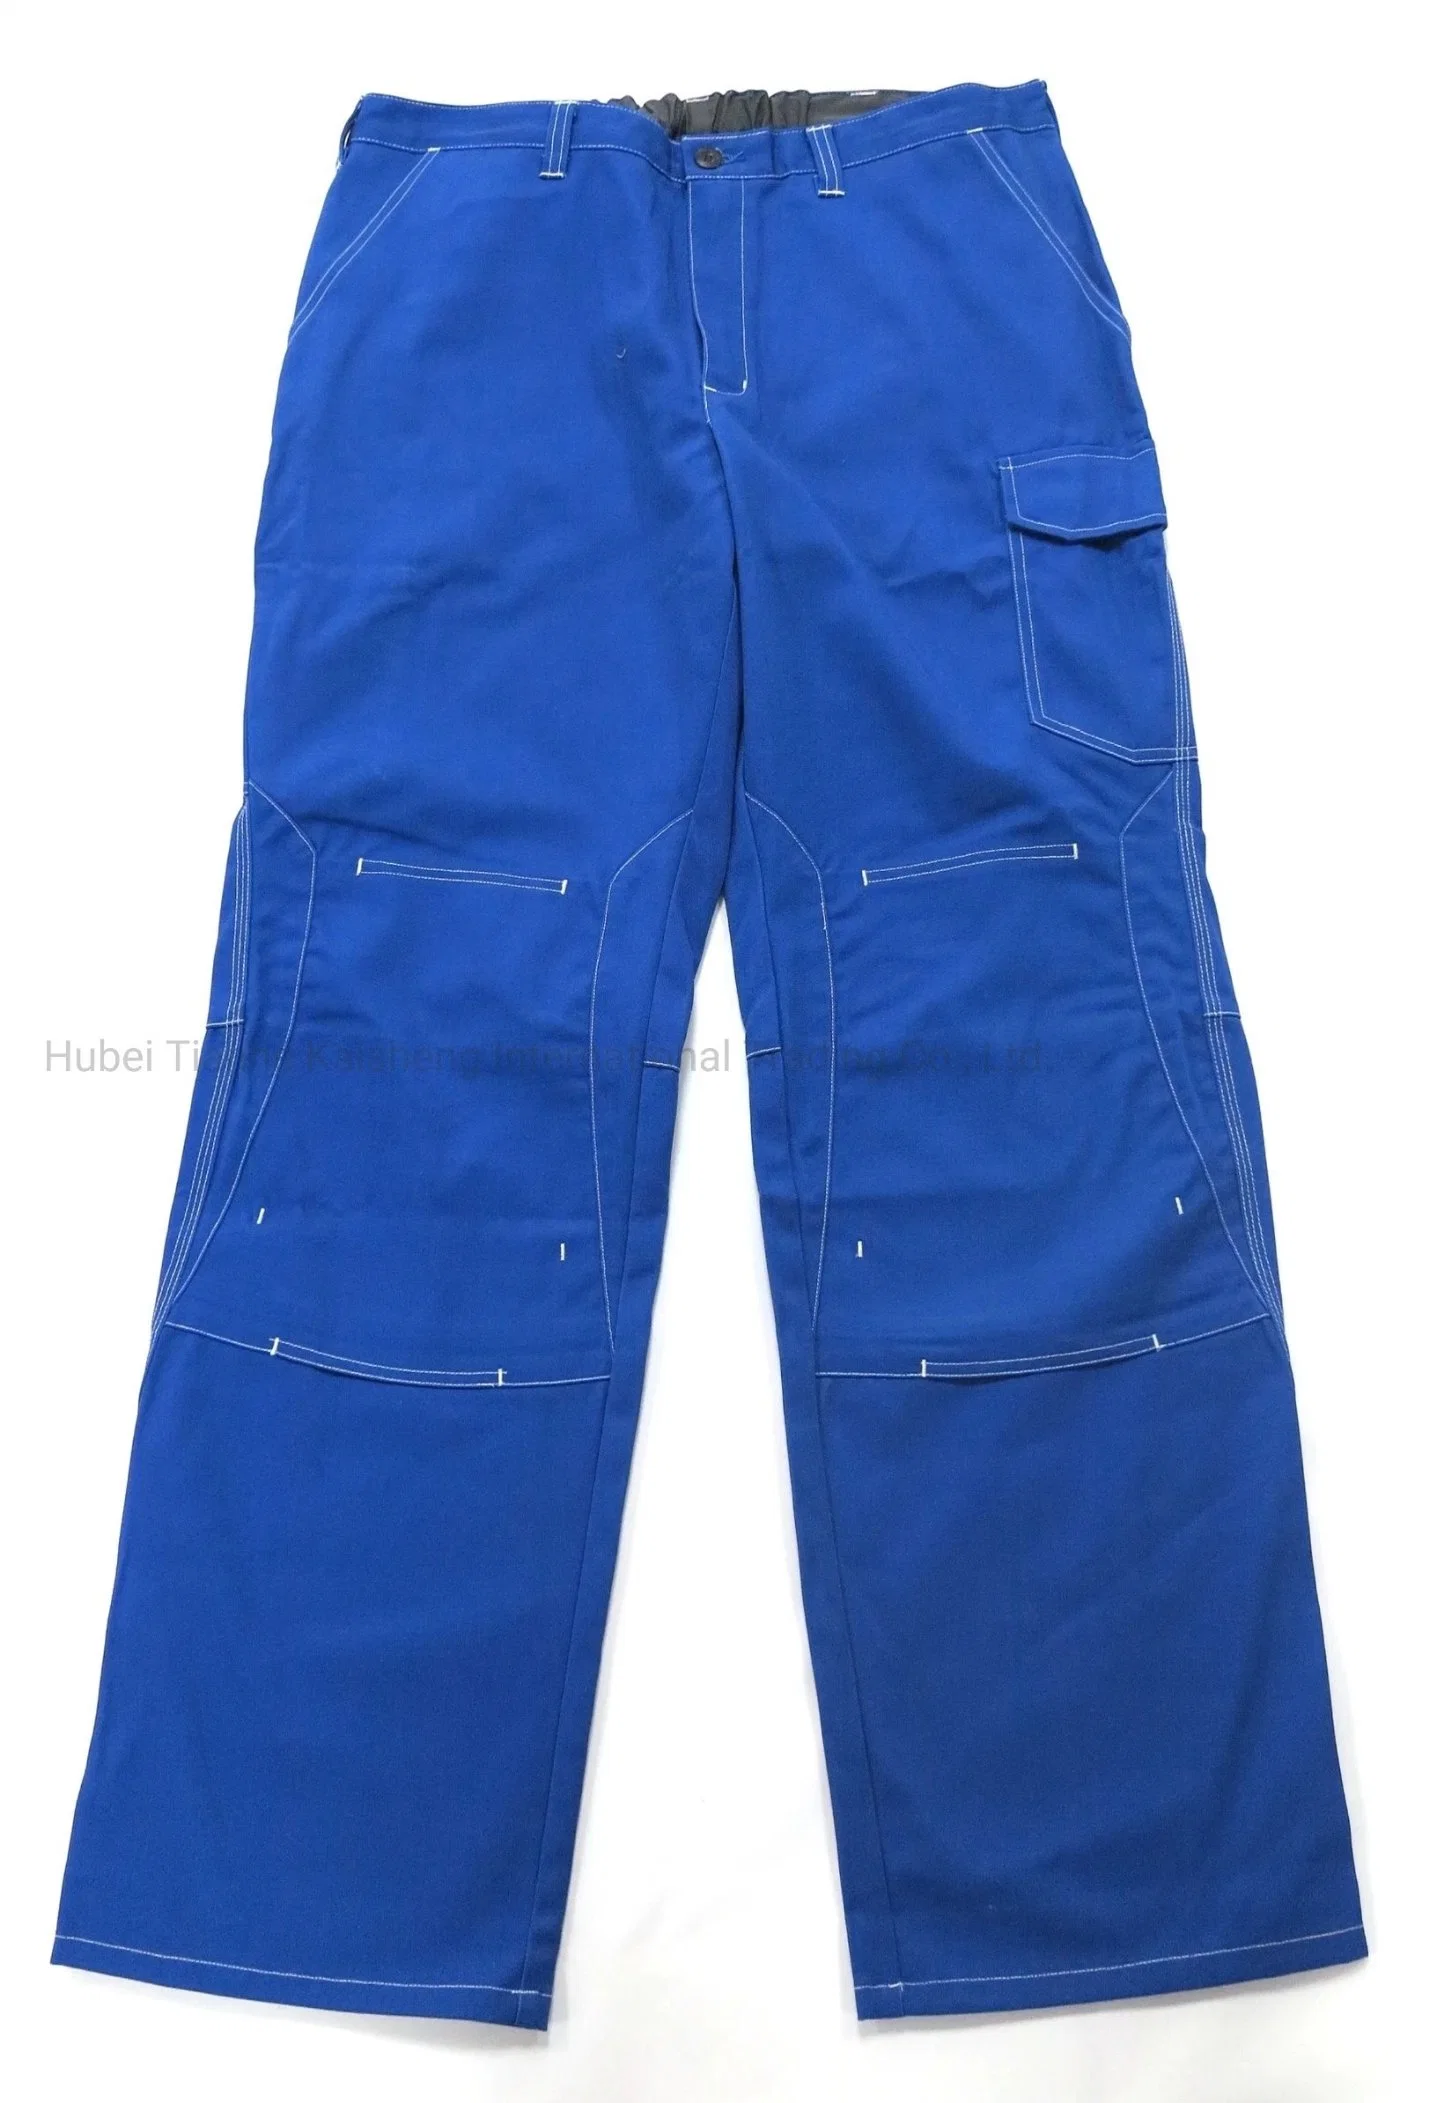 Мужской моды Рабочие брюки брюки груза